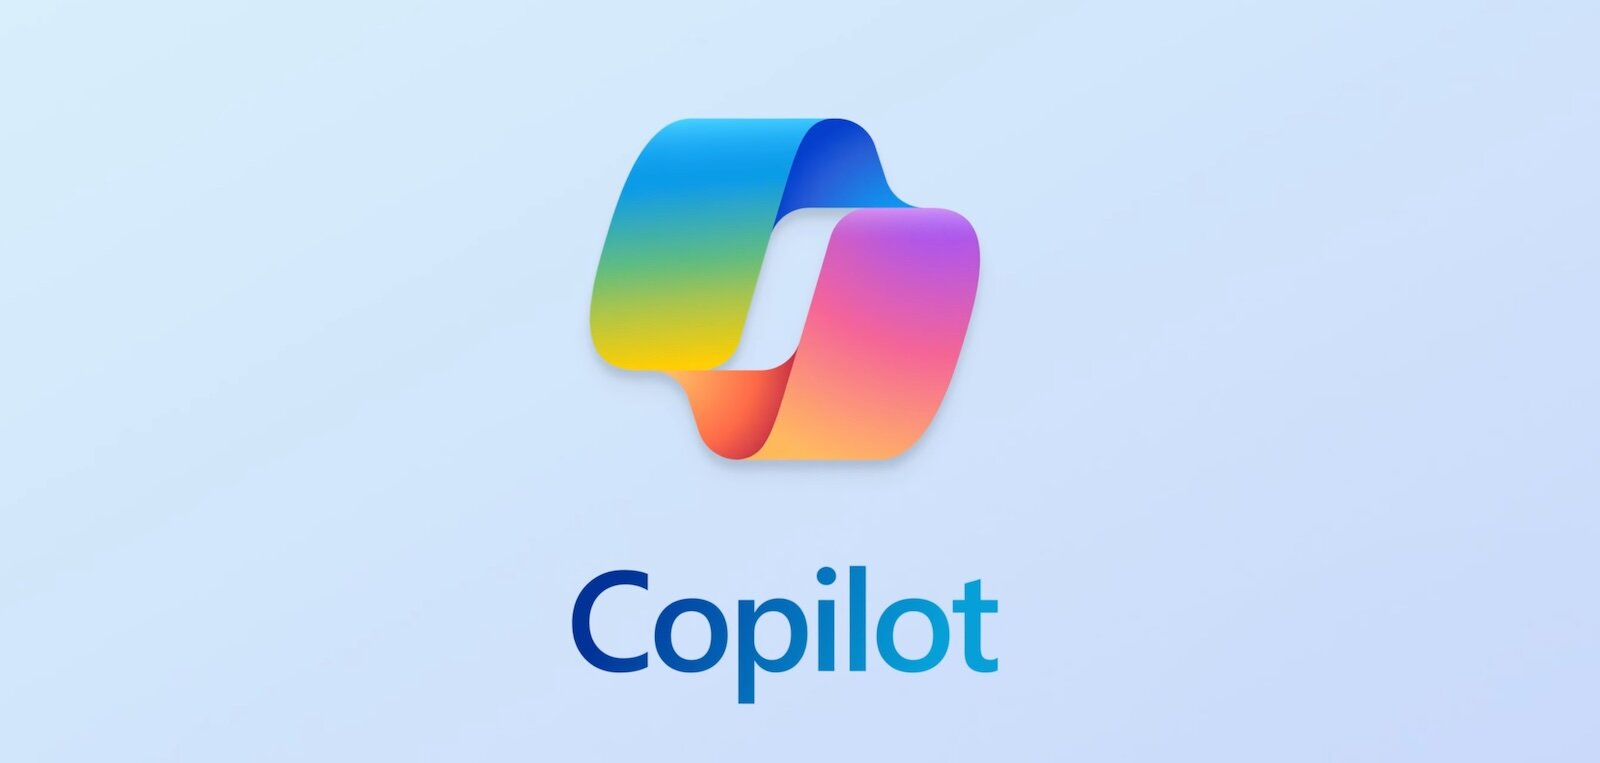 Το Microsoft Copilot είναι τώρα διαθέσιμο ως ανεξάρτητη εφαρμογή στο Android, τύπου ChatGPT